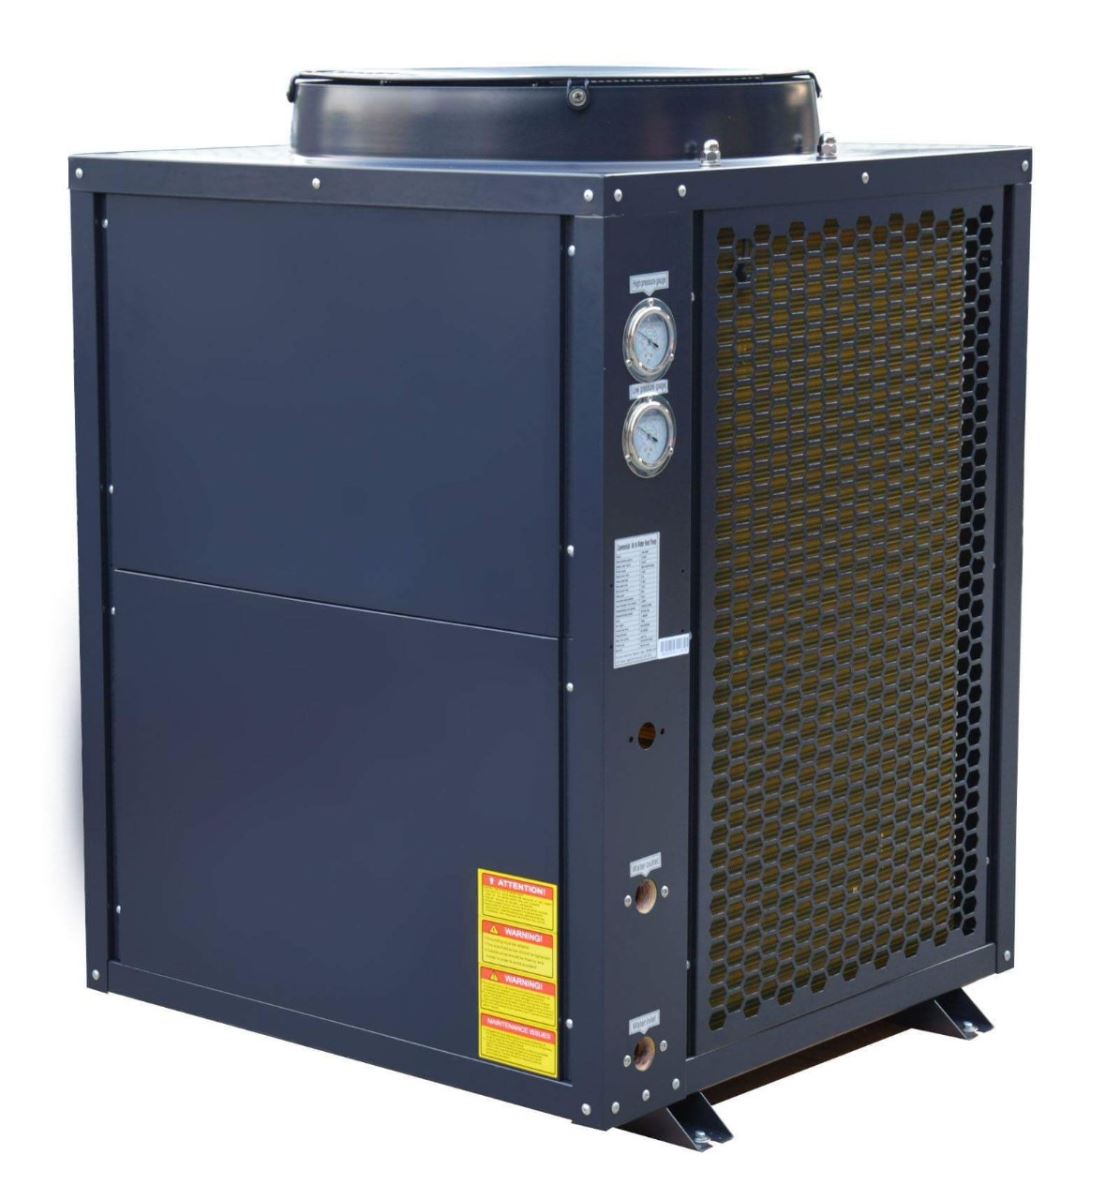 Thi công lắp đặt hệ thống máy nước nóng trung tâm chuyên nghiệp tại Hải Phòng - Ảnh 1